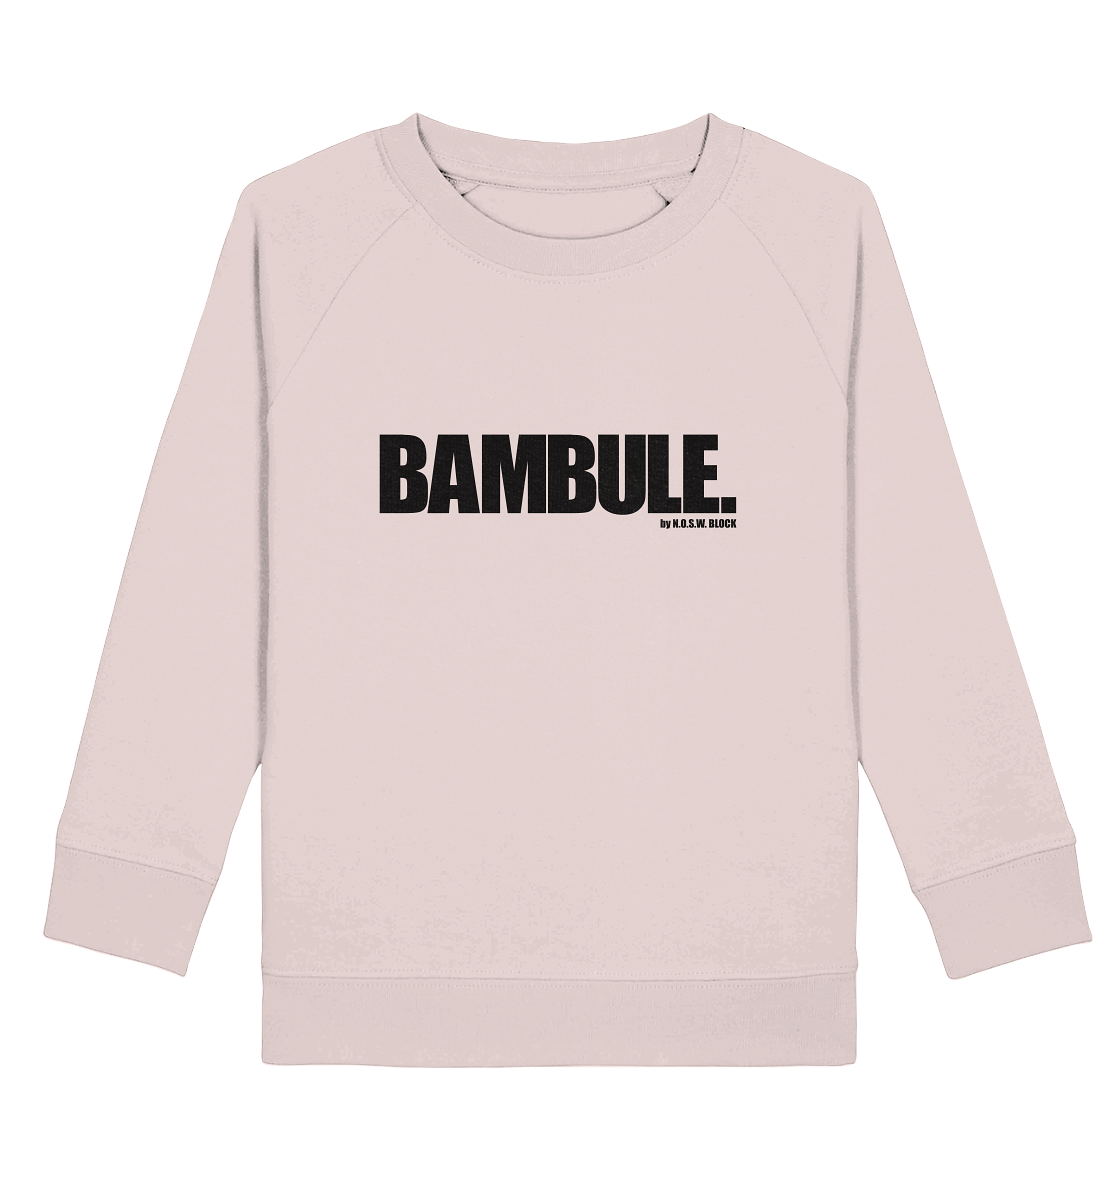 N.O.S.W. BLOCK Fanblock Sweater "BAMBULE." Kids UNISEX Organic Sweatshirt candy pink